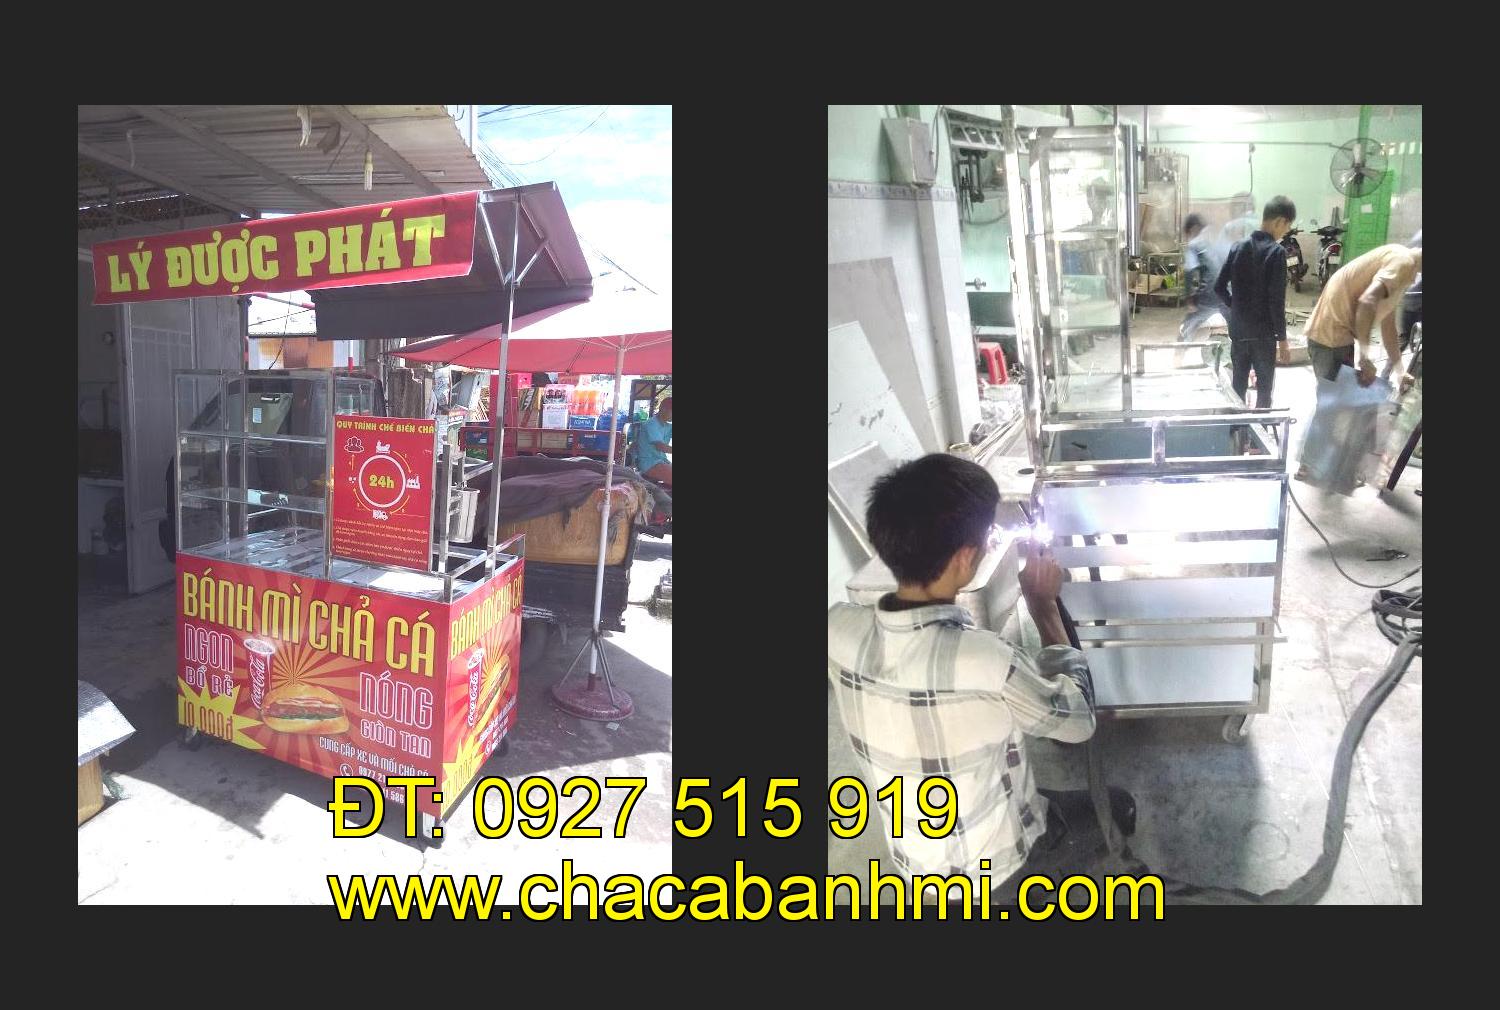 xe bánh mì chả cá giá rẻ tại tỉnh Nghệ An